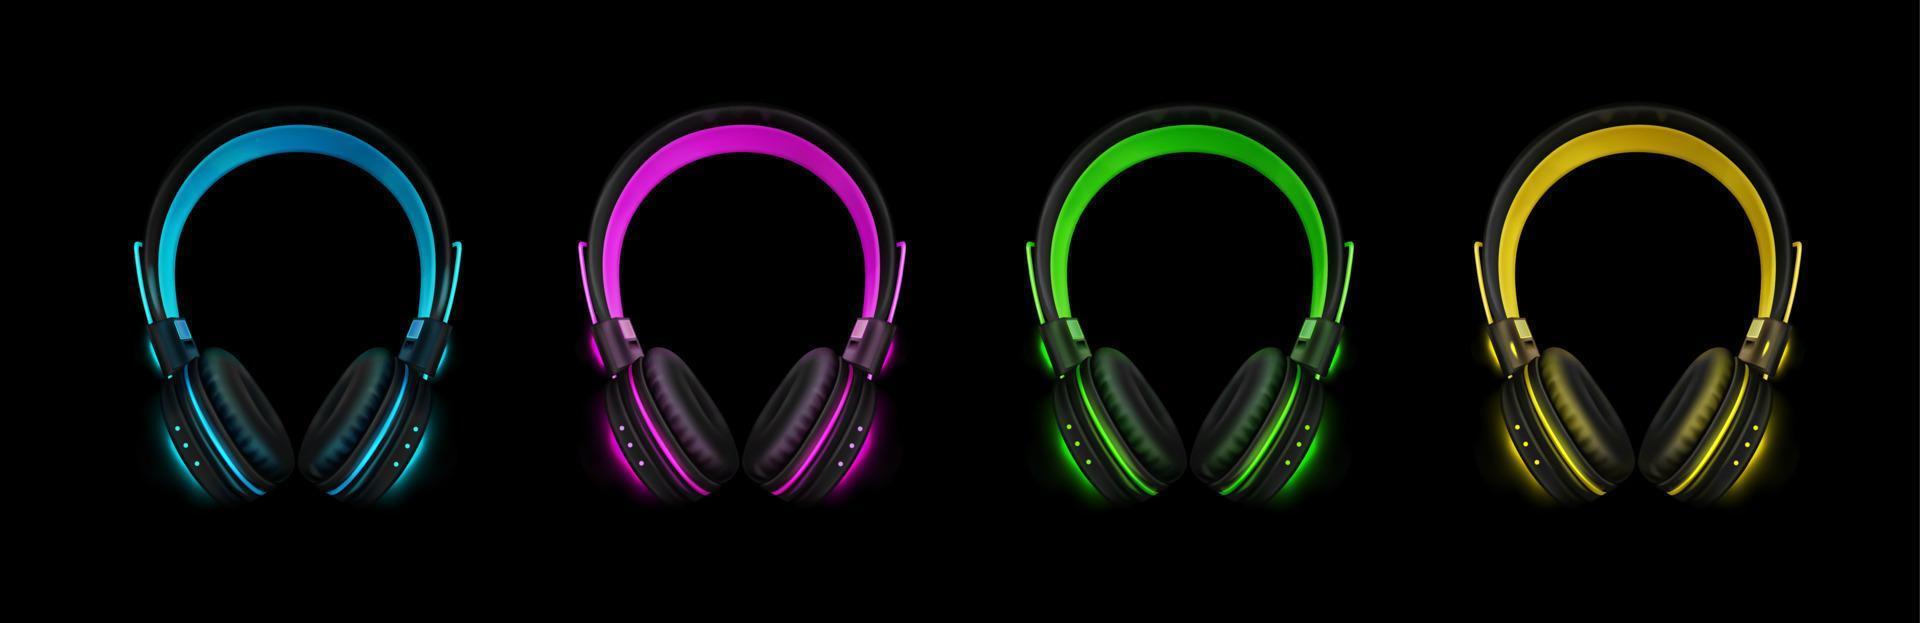 Neon headphones for listen music, dj audio headset vector